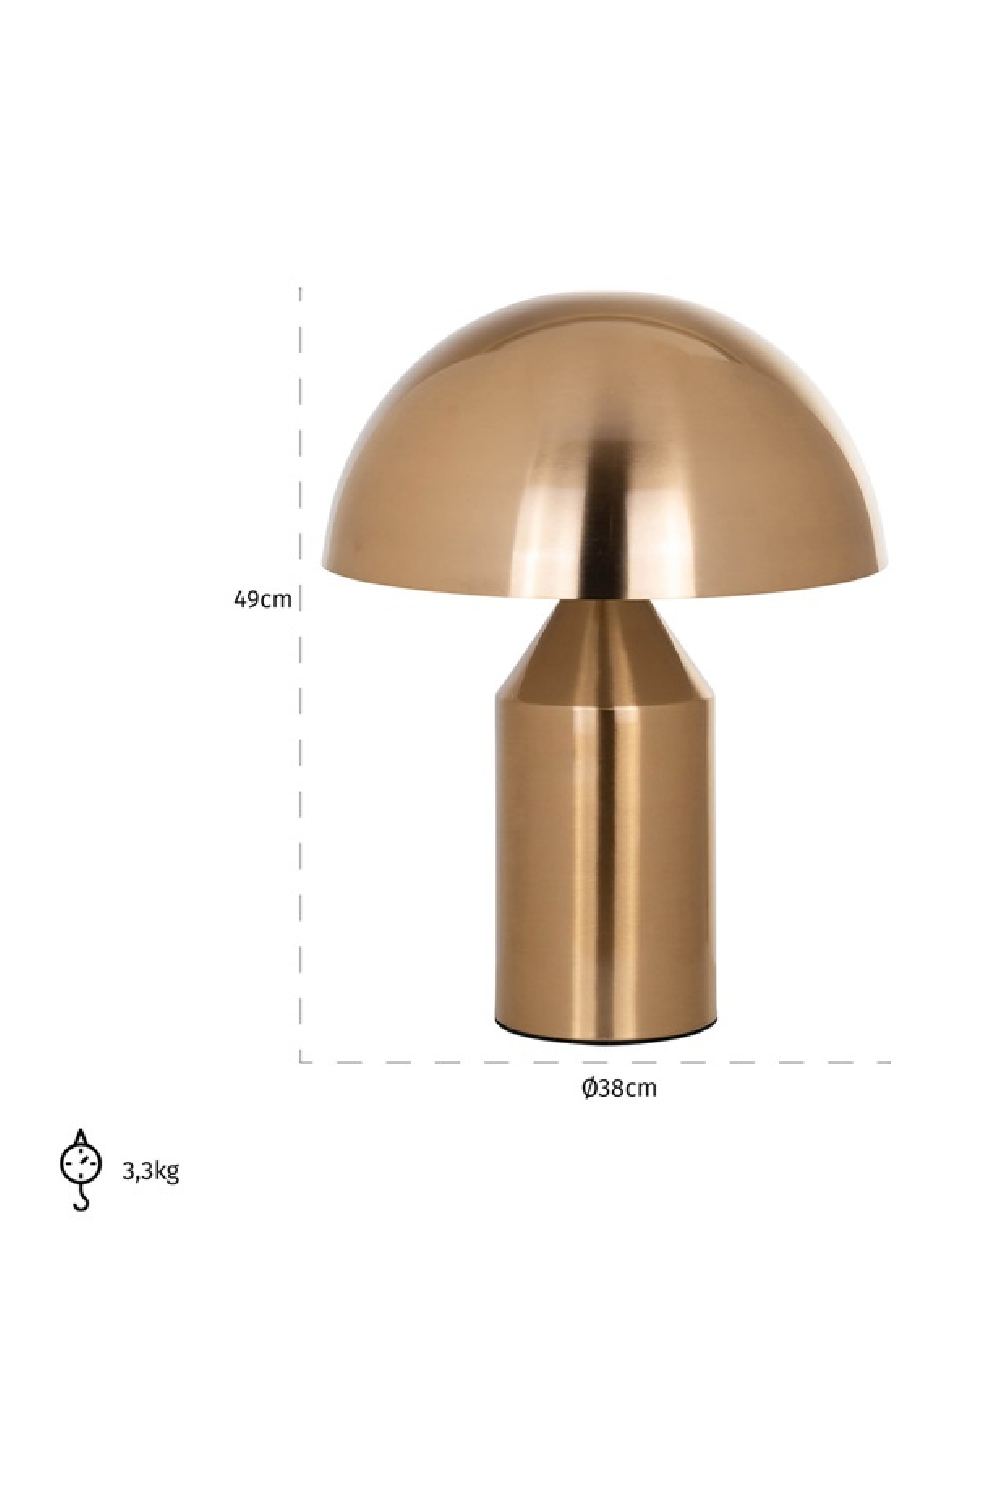 Gold Dome Table Lamp | OROA Alicia | Oroa.com